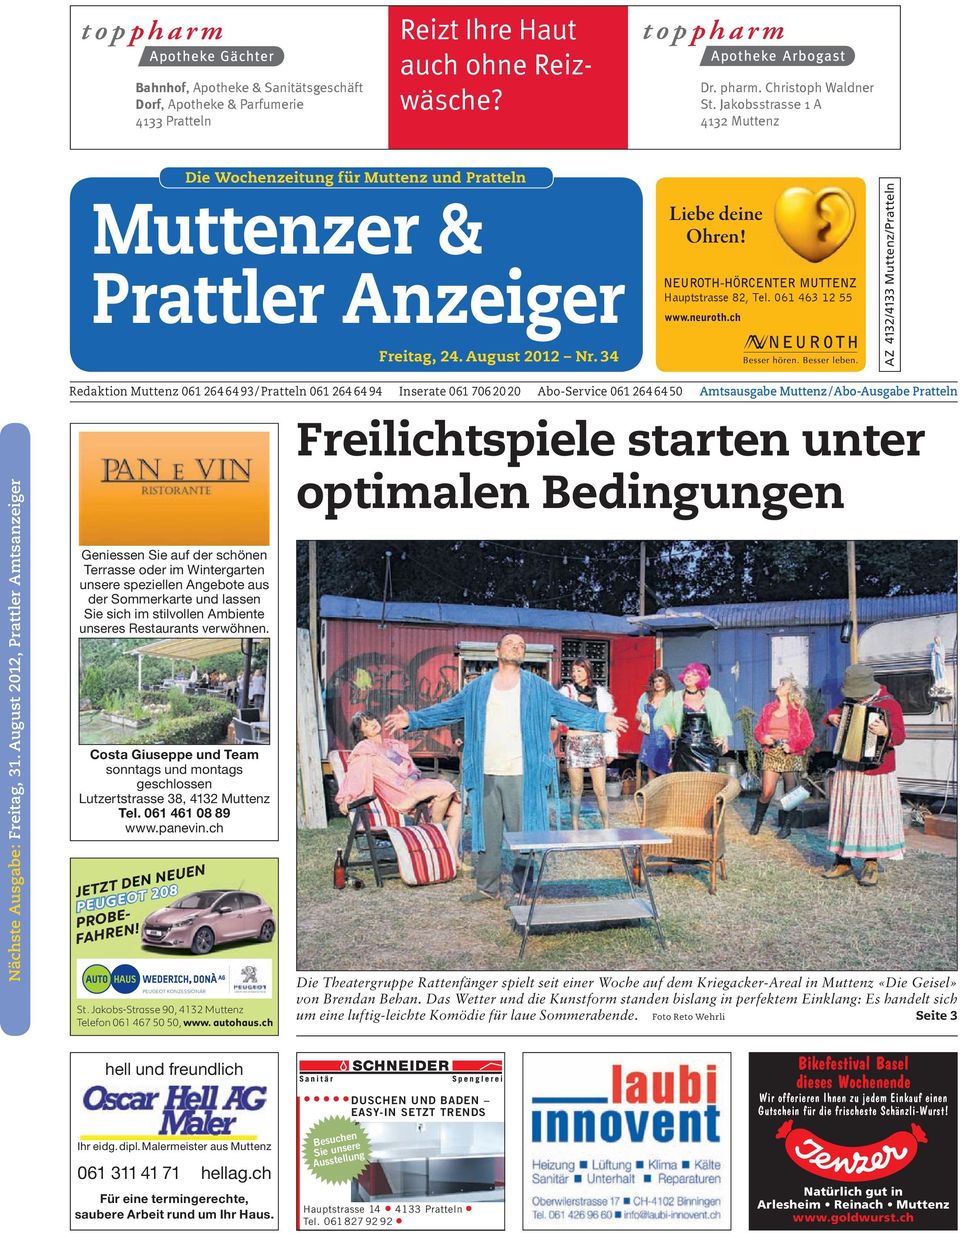 NEUROTH-HÖRCENTER MUTTENZ Hauptstrasse 82, Tel. 061 463 12 55 www.neuroth.ch AZ 4132 / 4133 Muttenz / Pratteln Nächste Ausgabe: Freitag, 31.